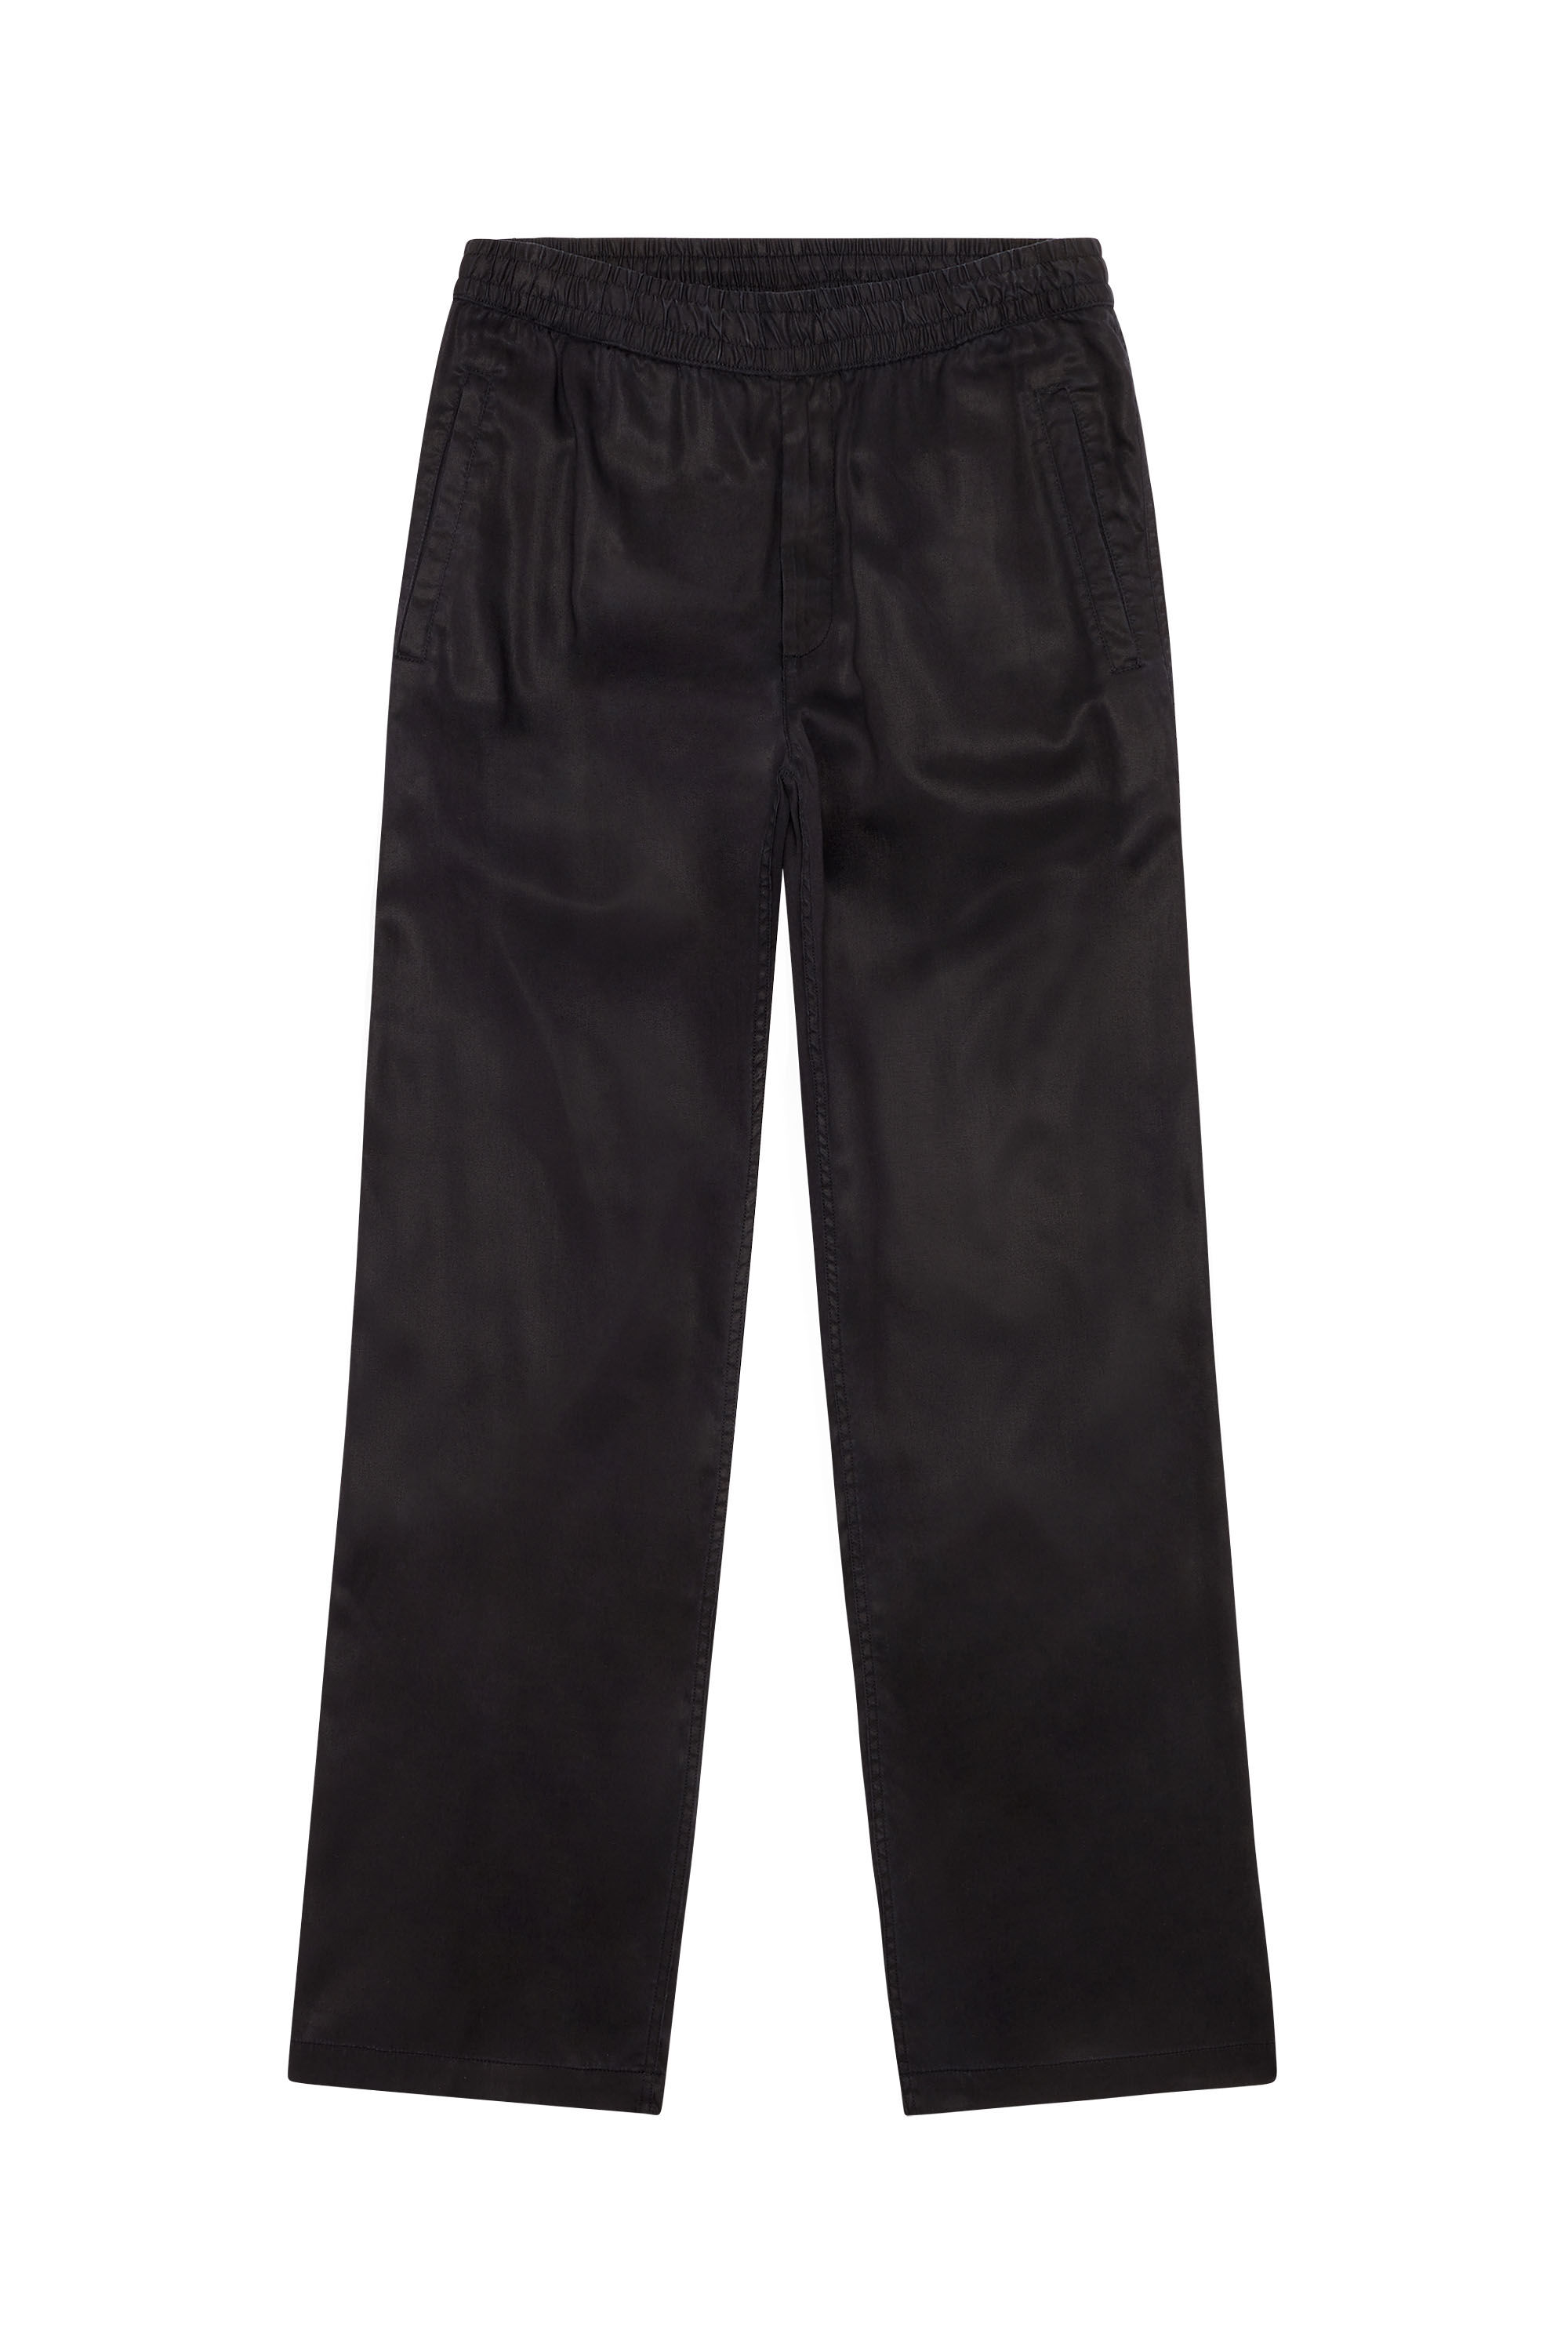 Men's Fluid pants in twill | Black | Diesel